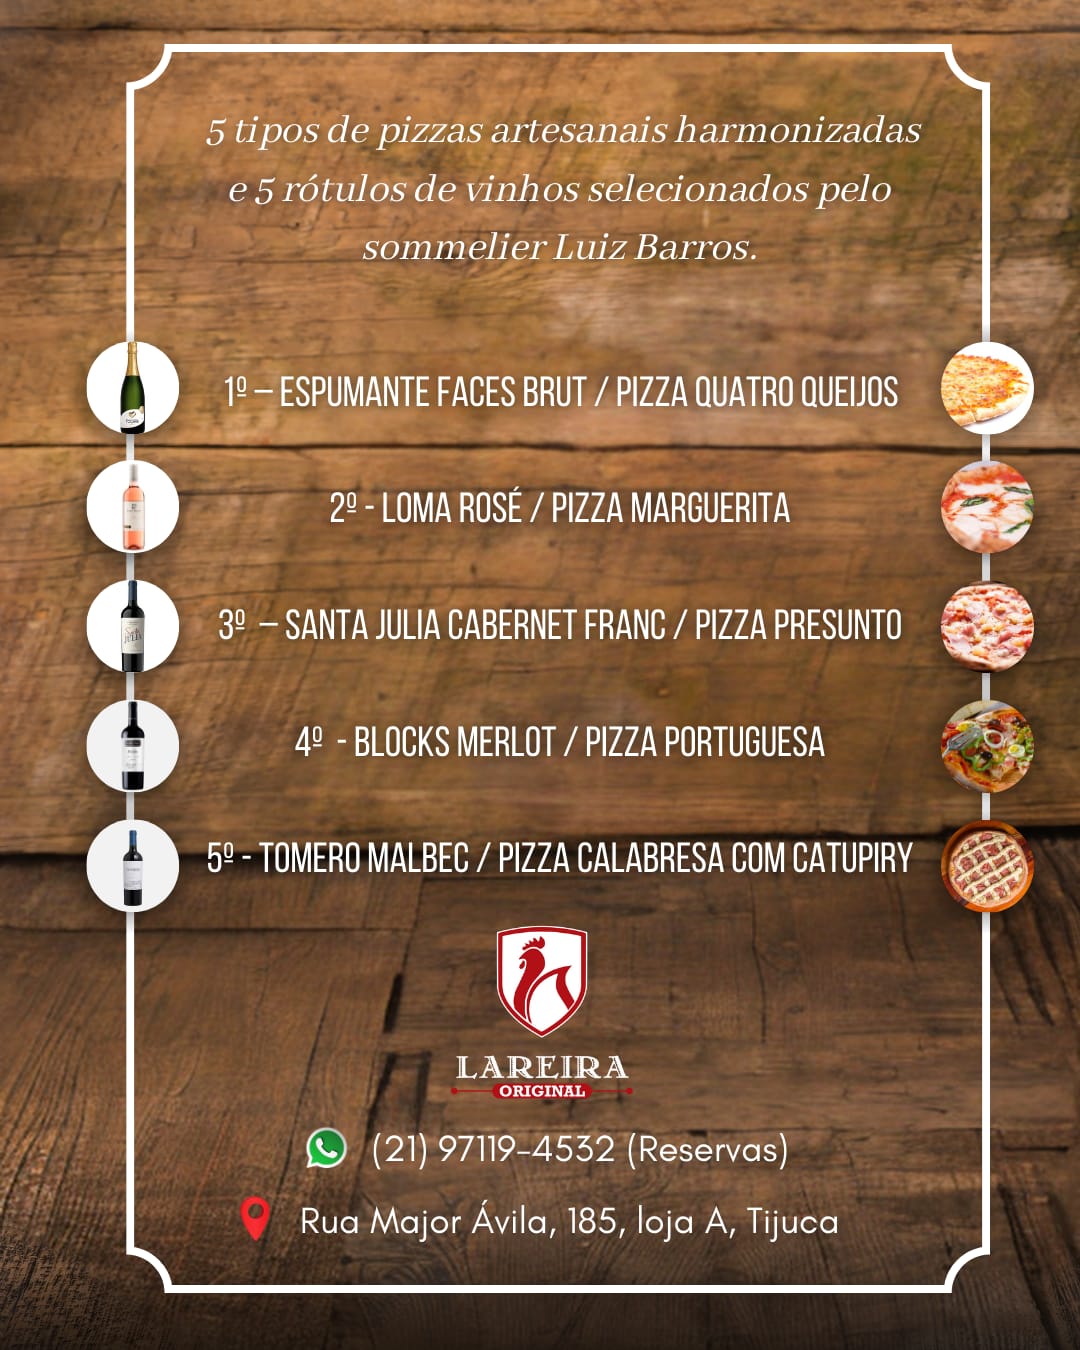 Lareira Original promove noite de harmonização de vinhos com pizzas